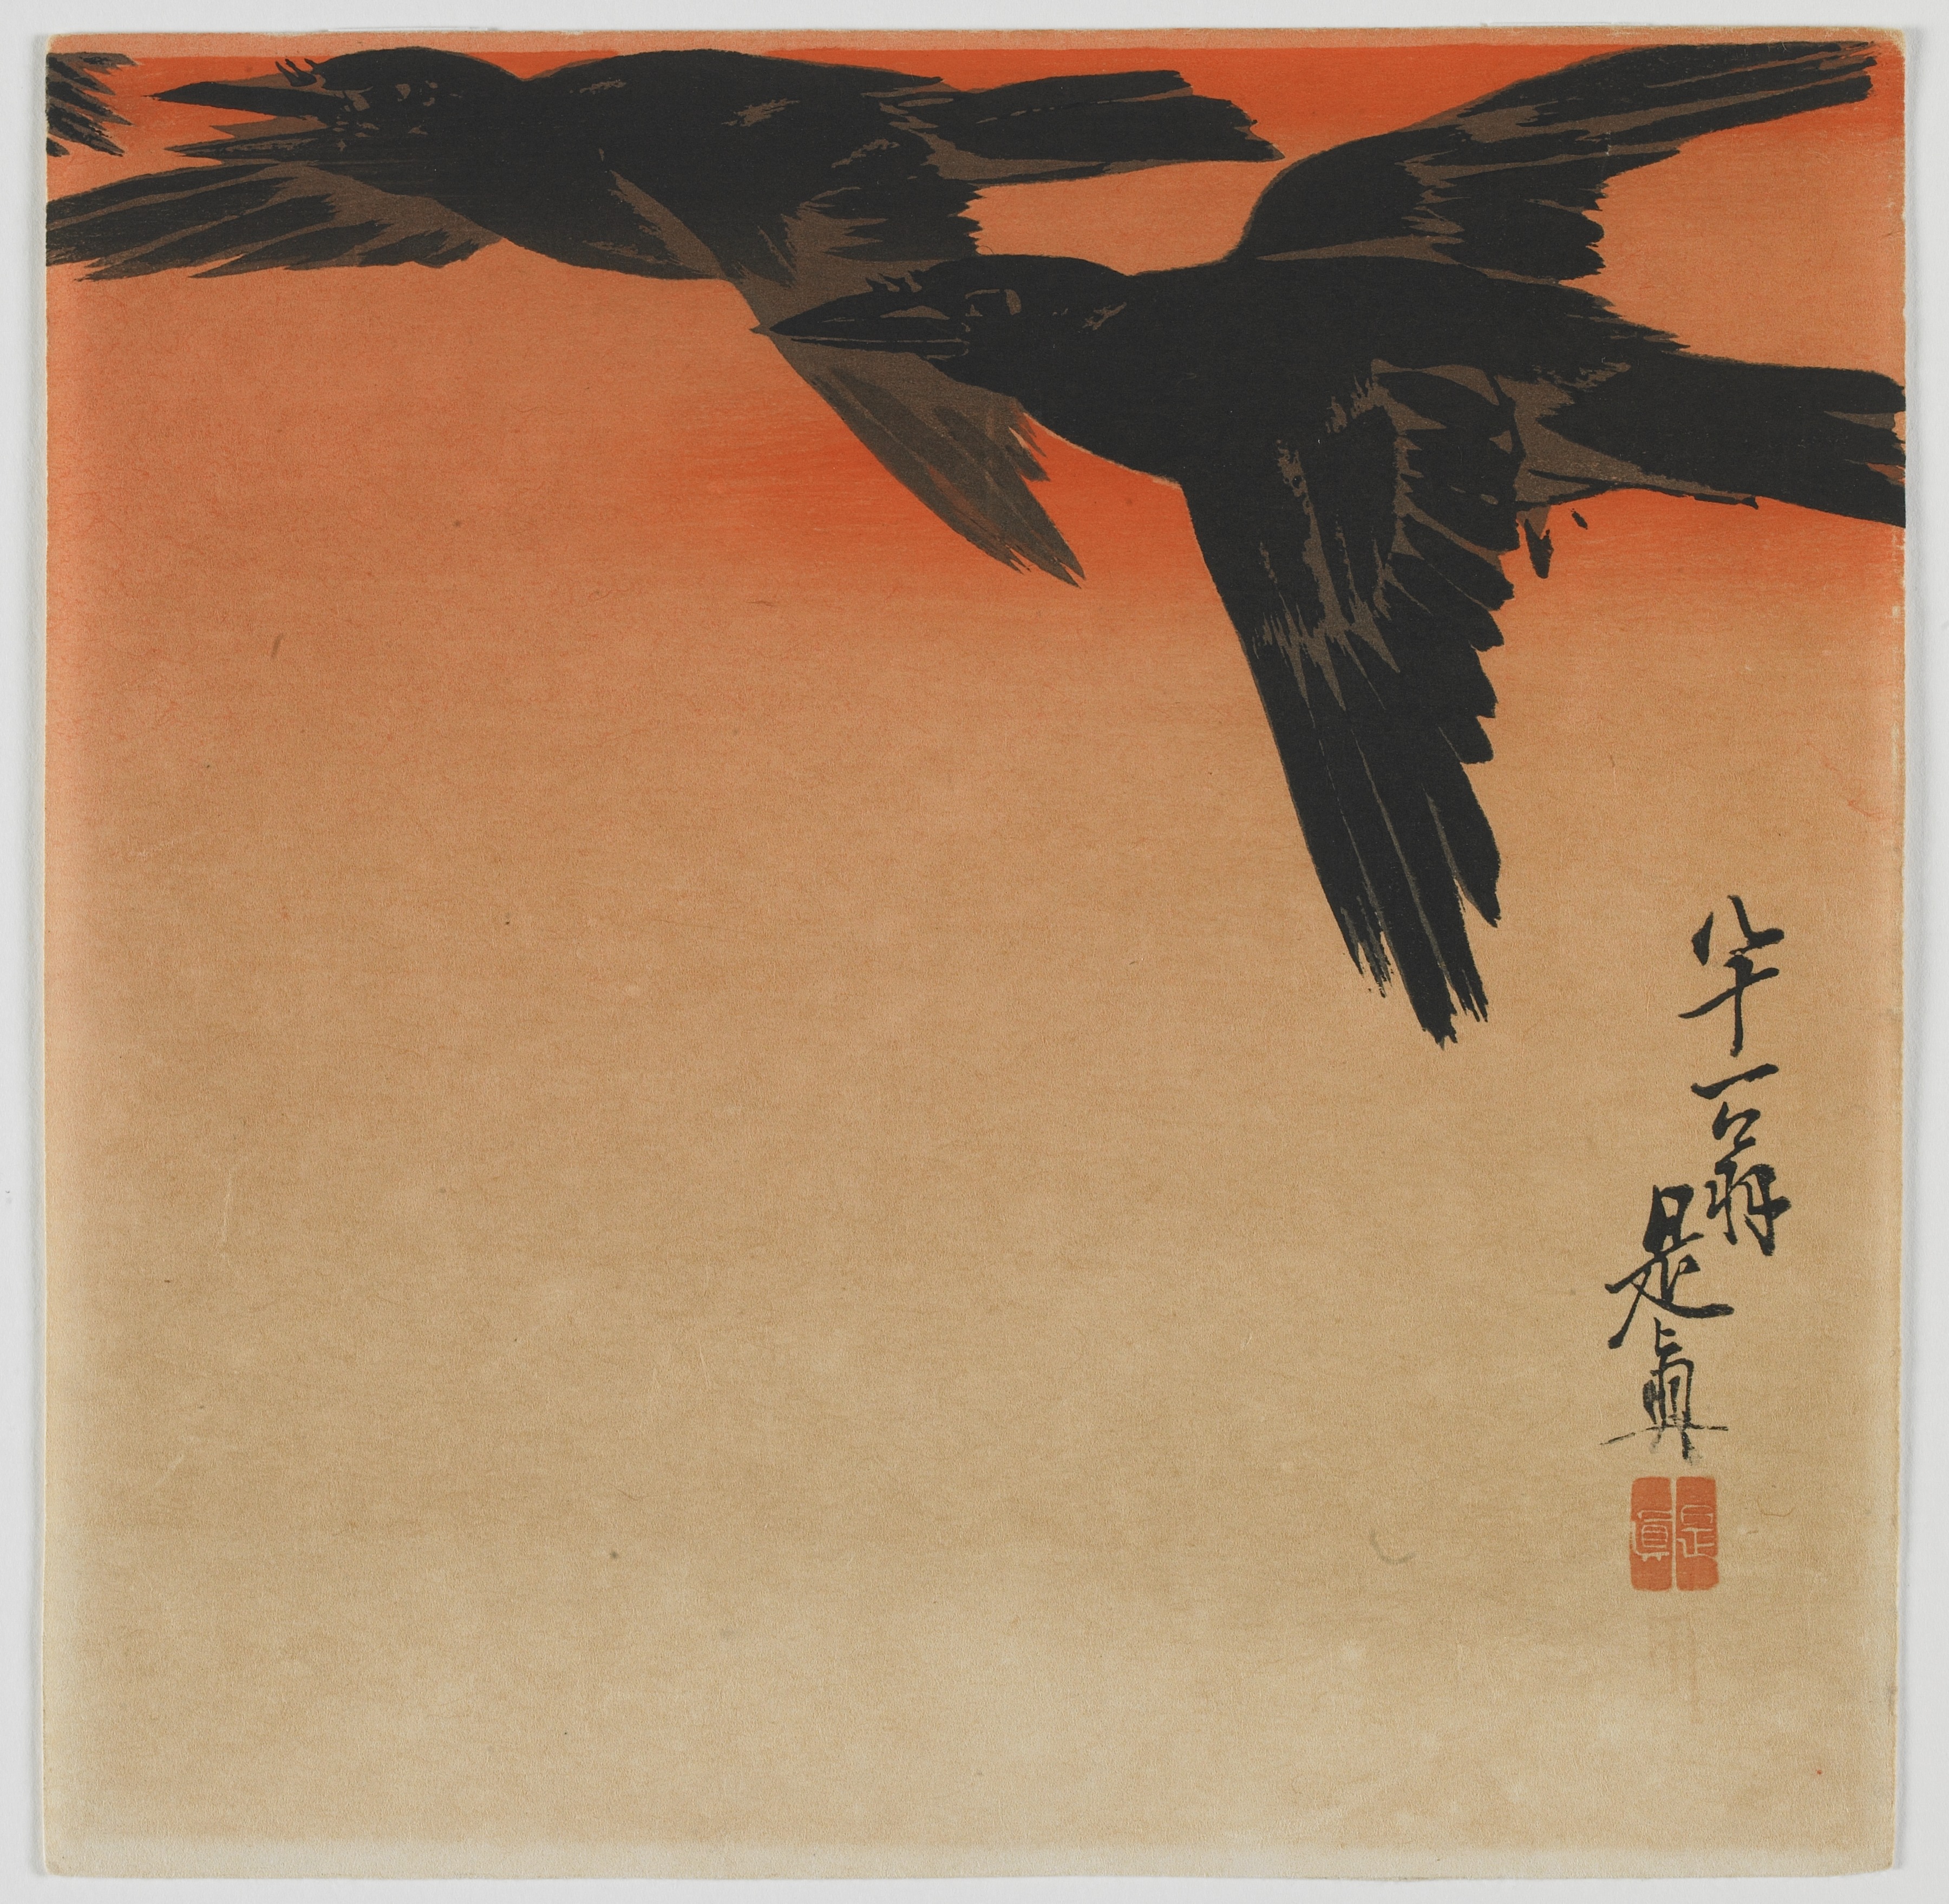 暮色中的乌鸦 by 柴田 是真 - 19世纪晚期 - 23.8 x 23.9 厘米 